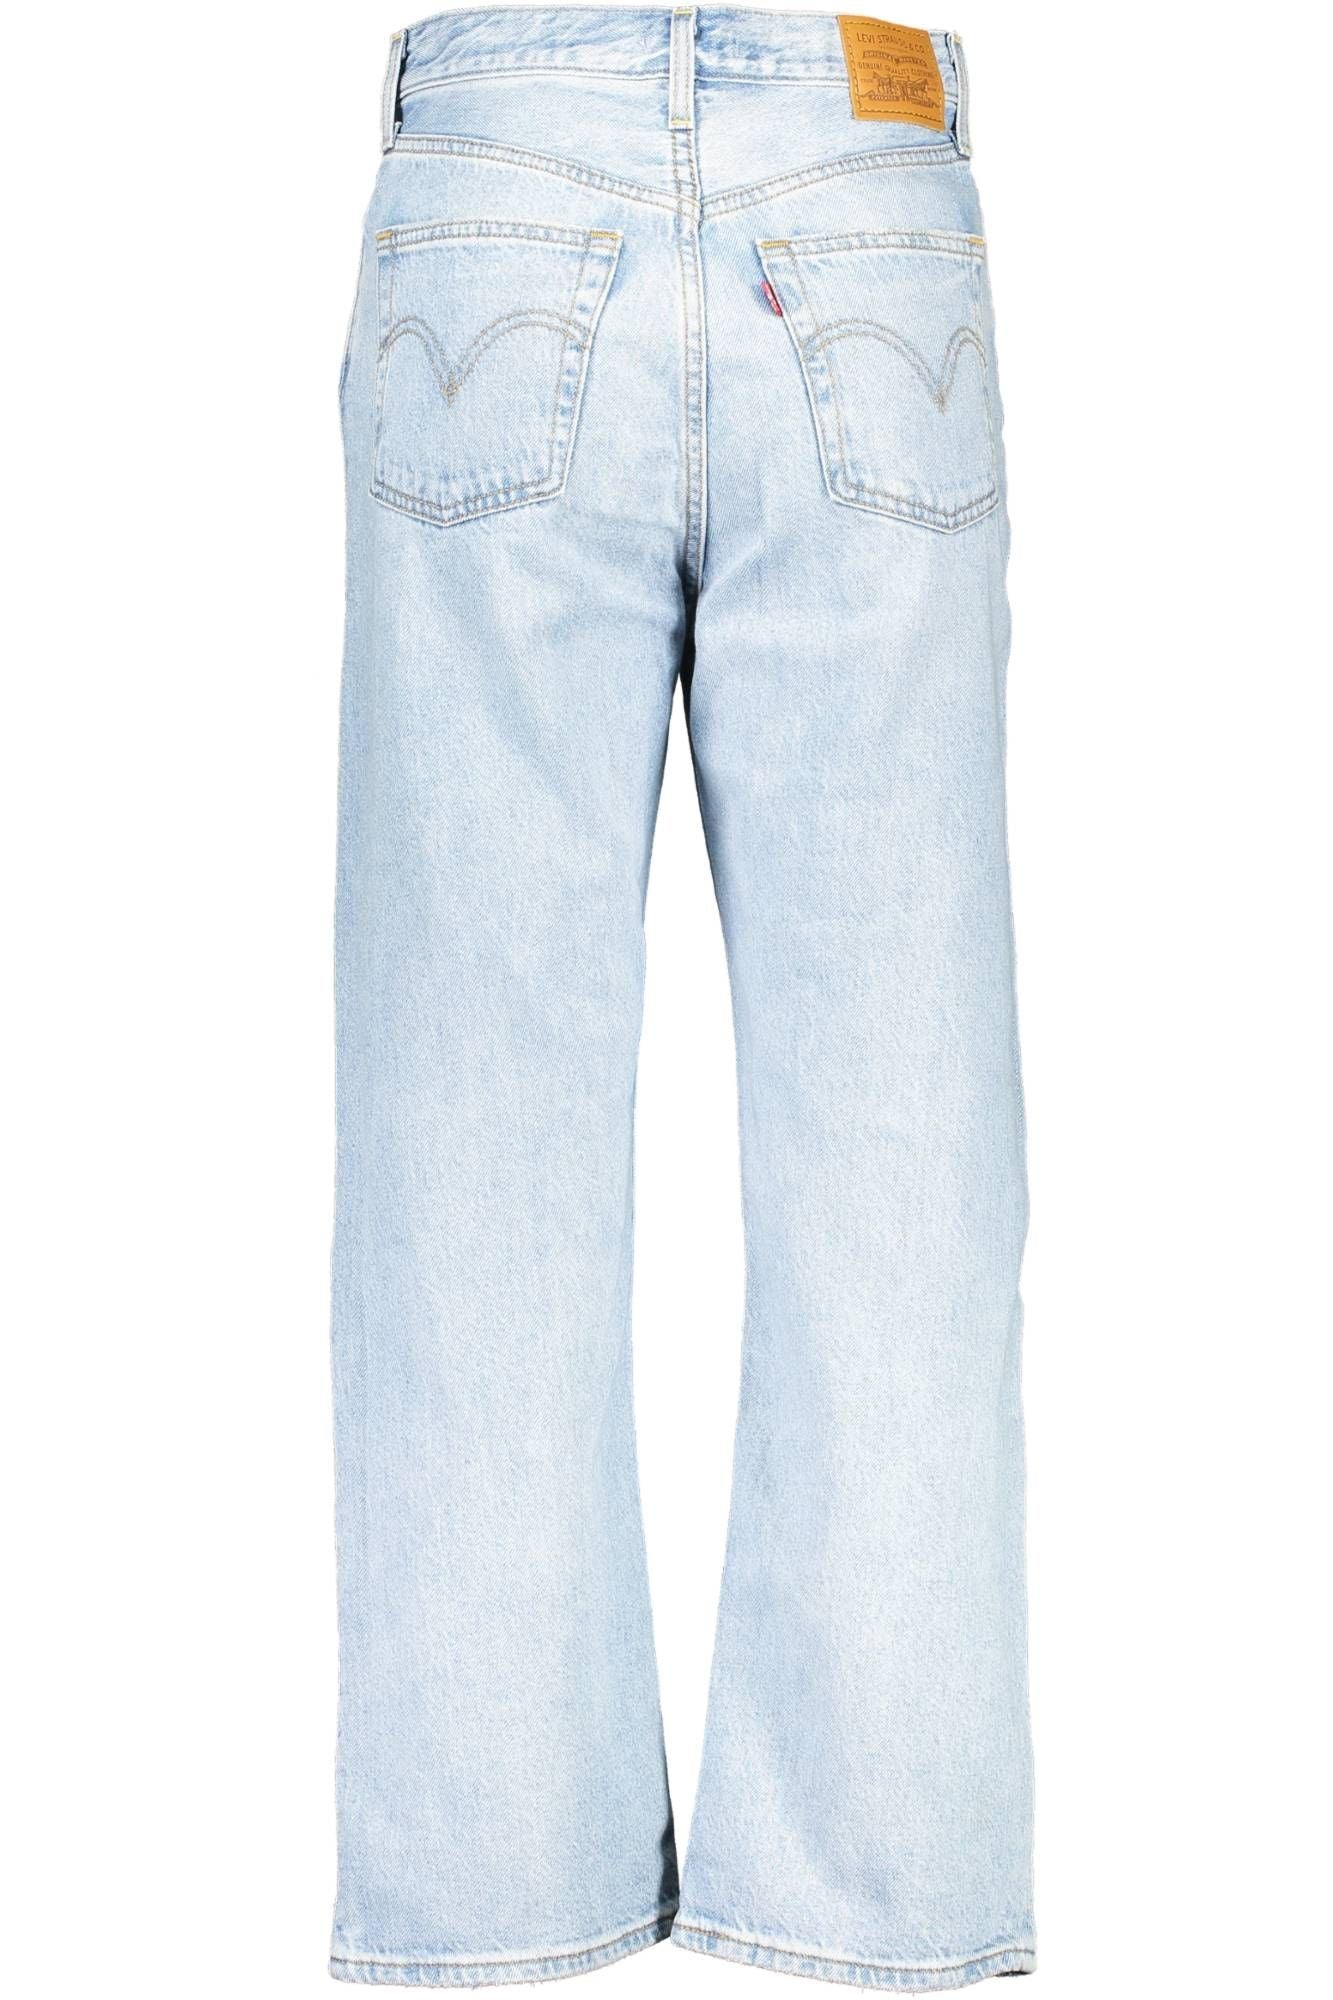 Levi's Vintage Light Blue Designer Jeans